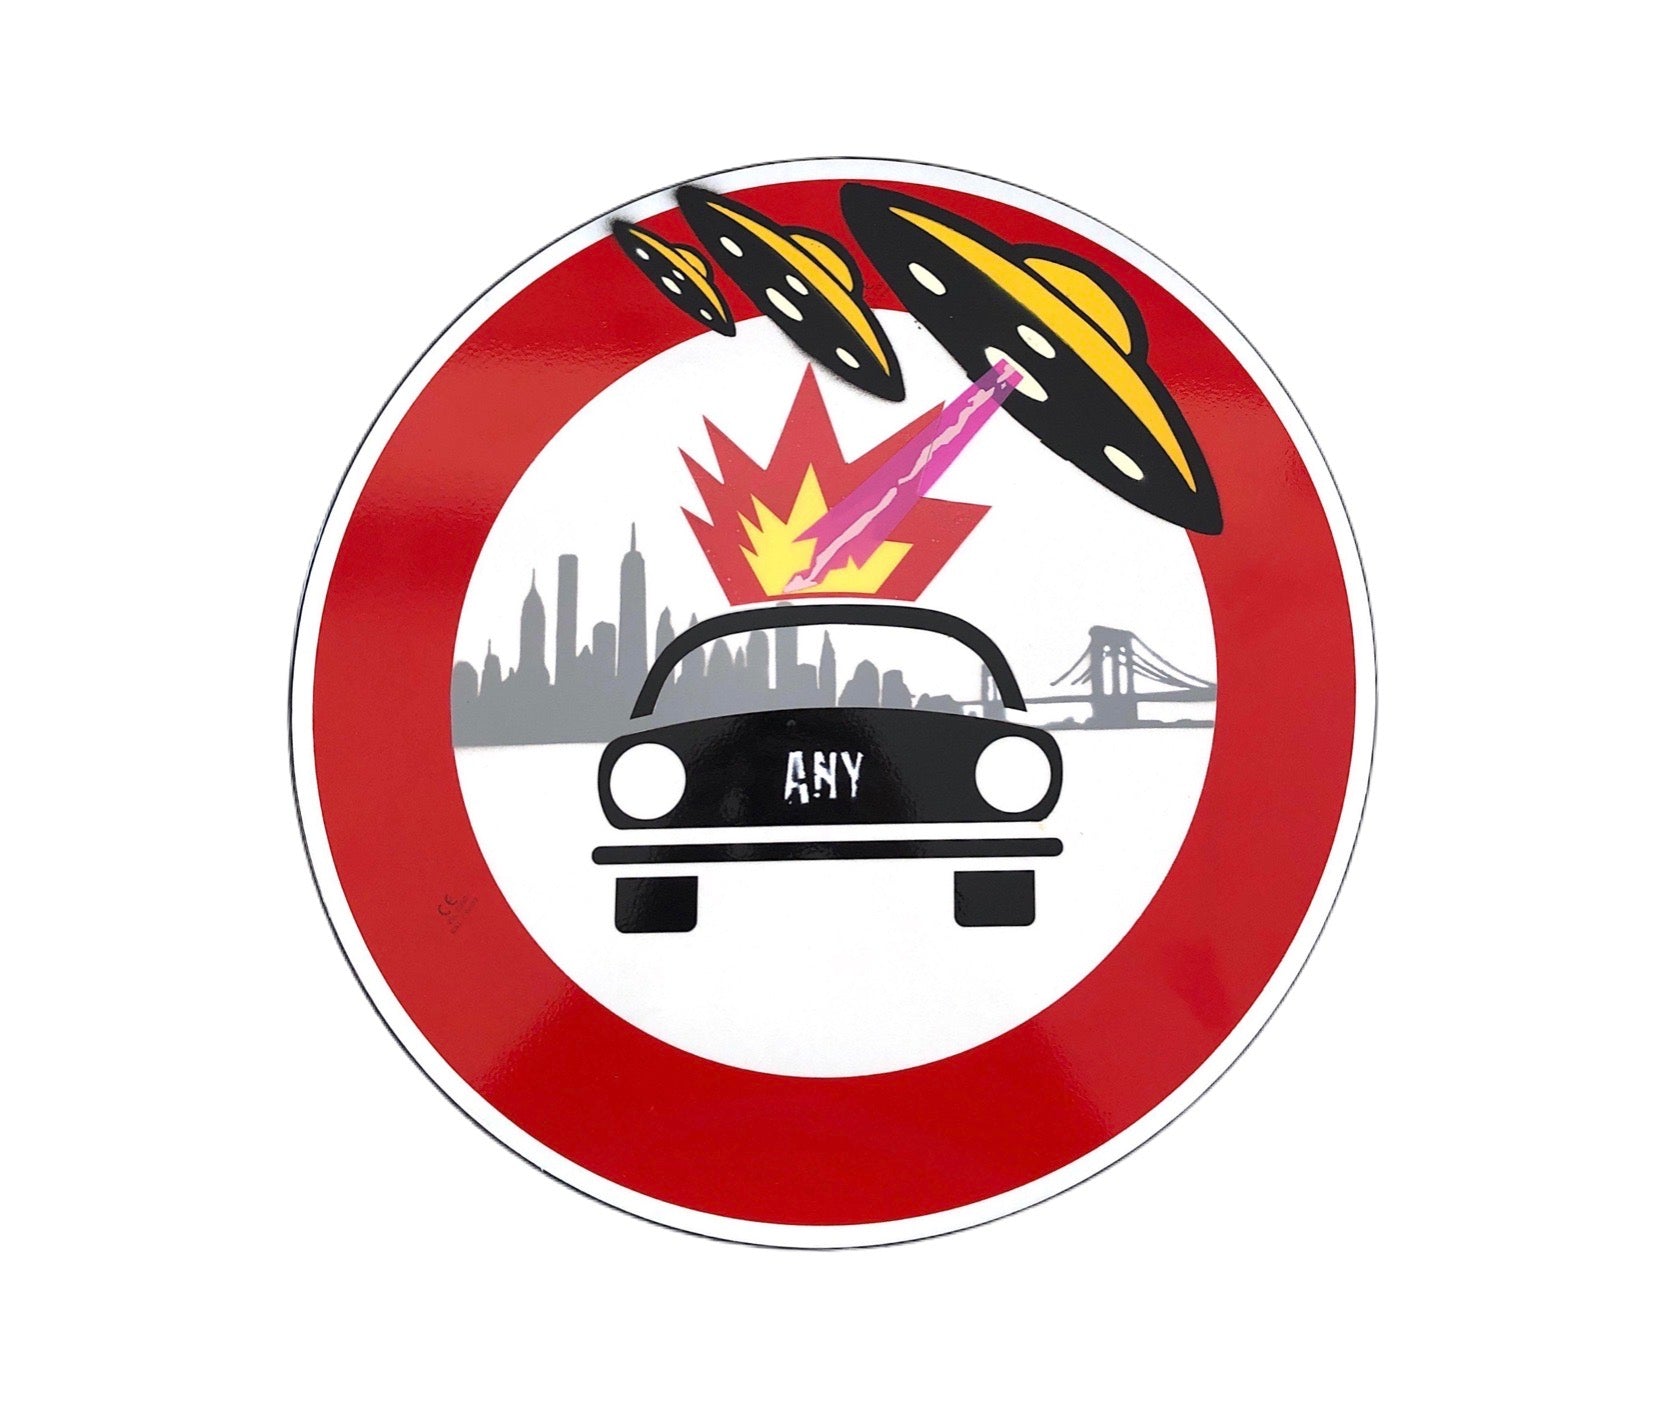 Diesel Attack di Any. Opera unica spray e stickers su cartello stradale rappresentante connessioni allo scenario di New York, come ricorda l'acronimo presente nel nome dell'artista "About New York"  | Cd Studio d'Arte